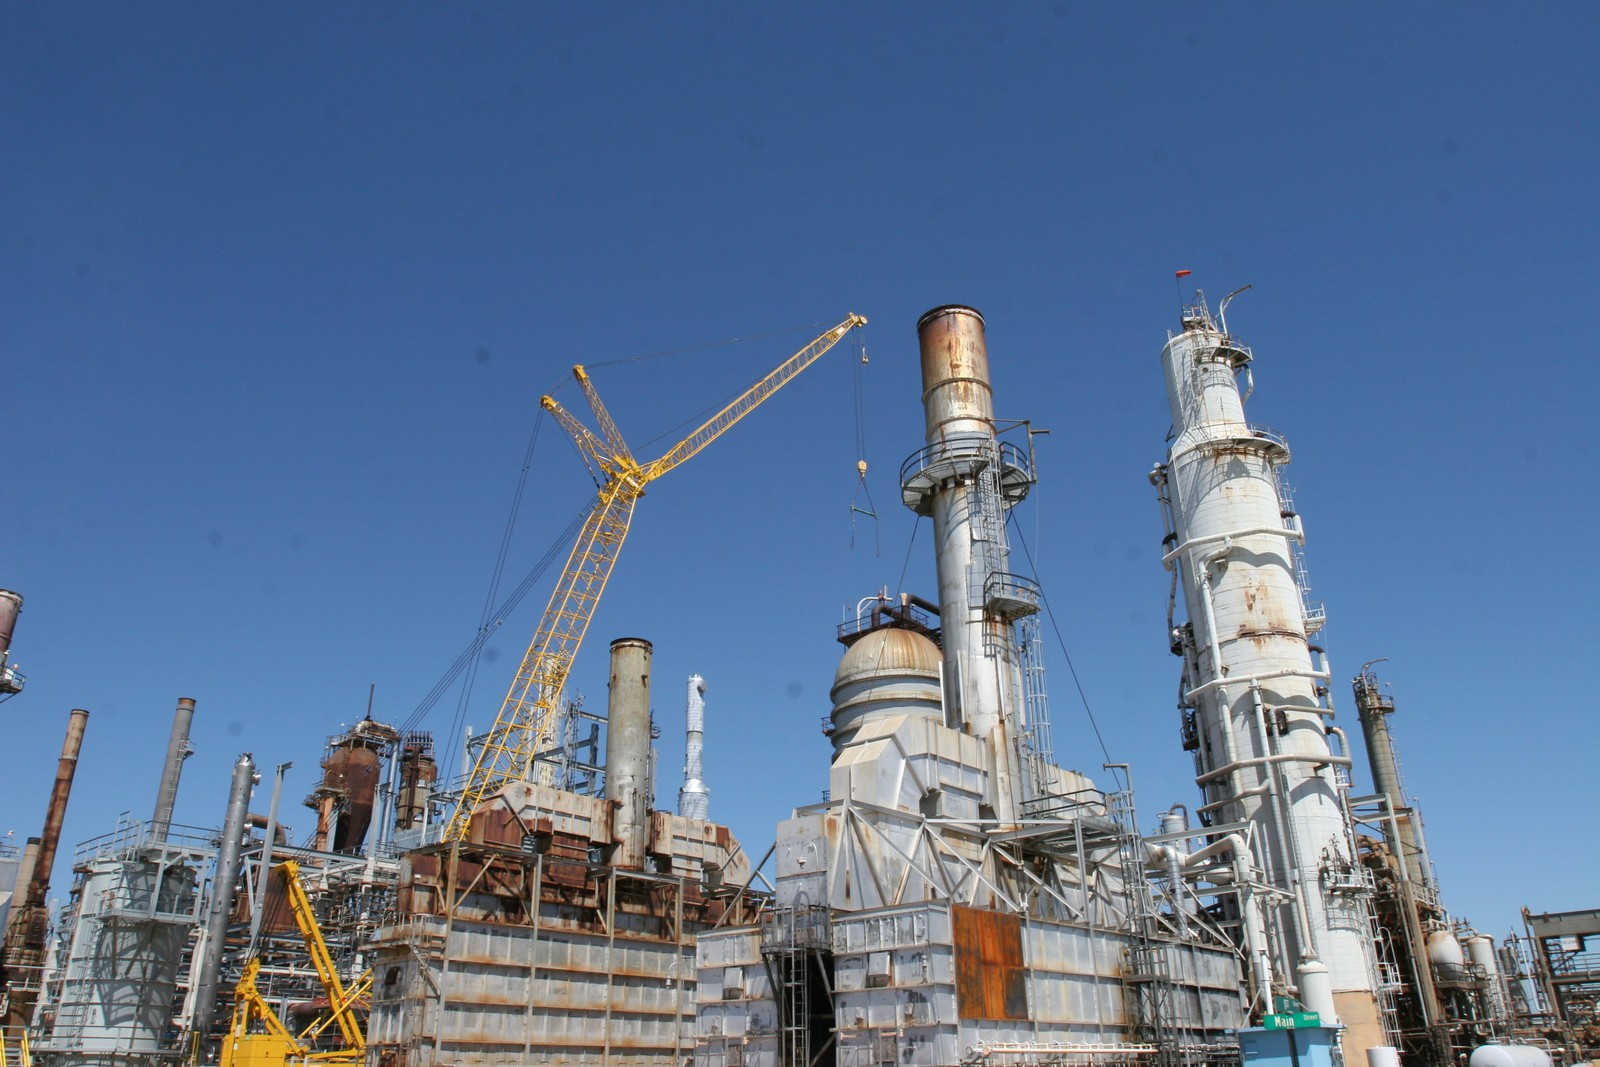 Símbolo da corrupção da estatal, a Petrobras vendeu a refinaria de Pasadena, nos EUA, para a Chevron. Arrecadou R$ 1,8 bilhão com a operação, concluída em maio. Richard Carson